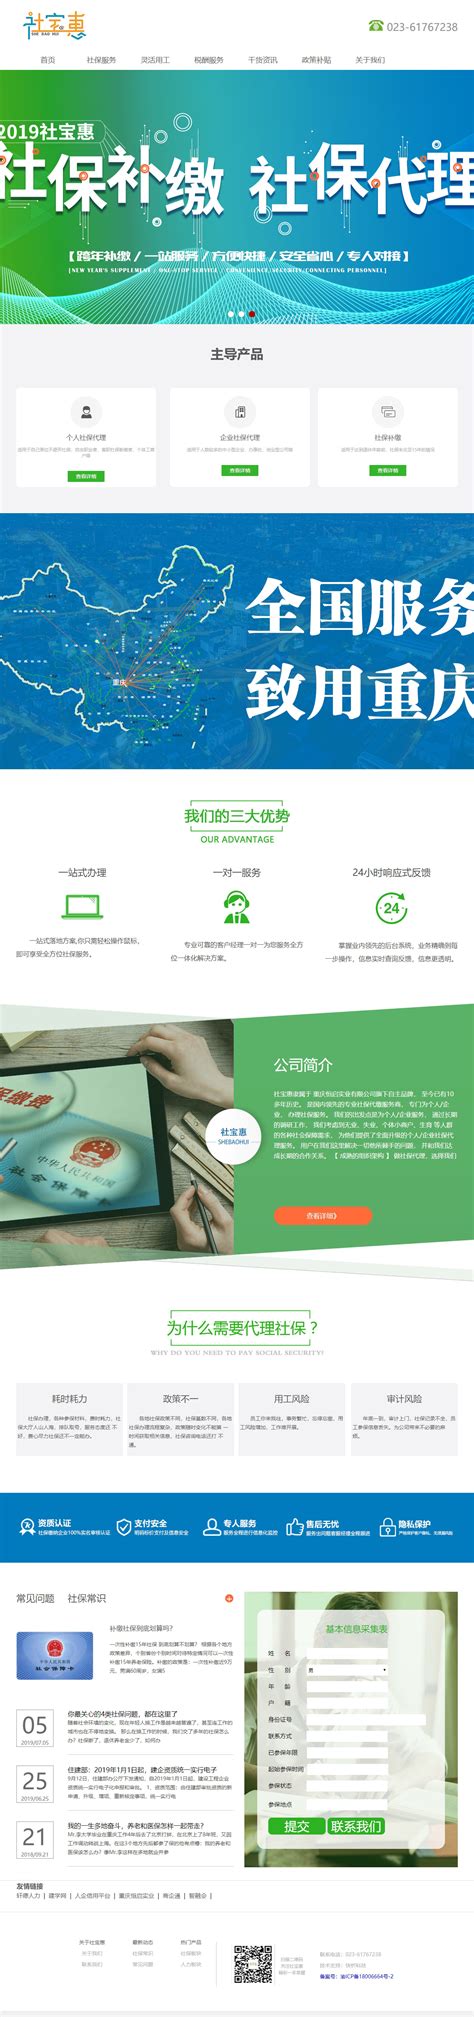 重庆公司网络营销电话